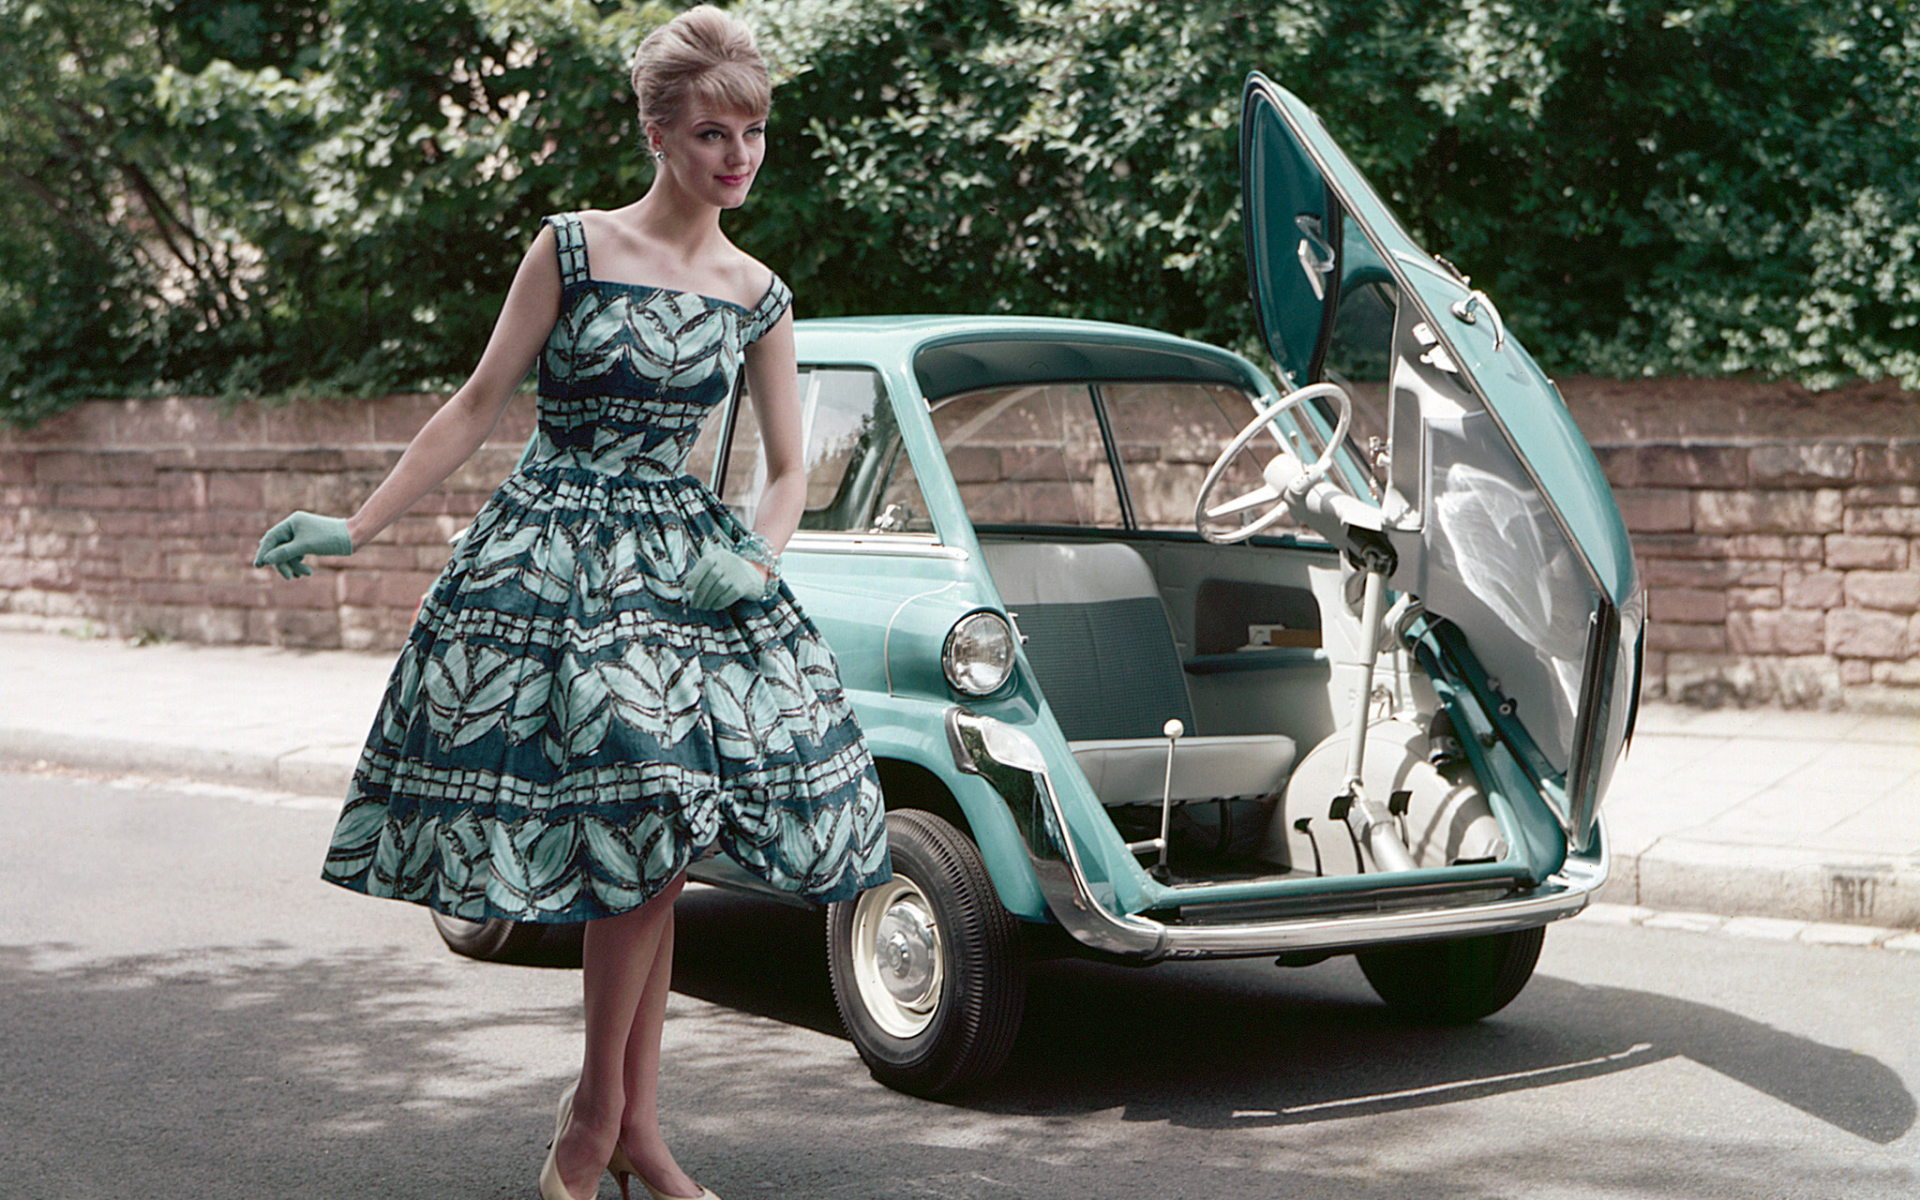 в платье, девушка, а-ля 60 годы, автомобиль, микро, красивая, девушки, девушка